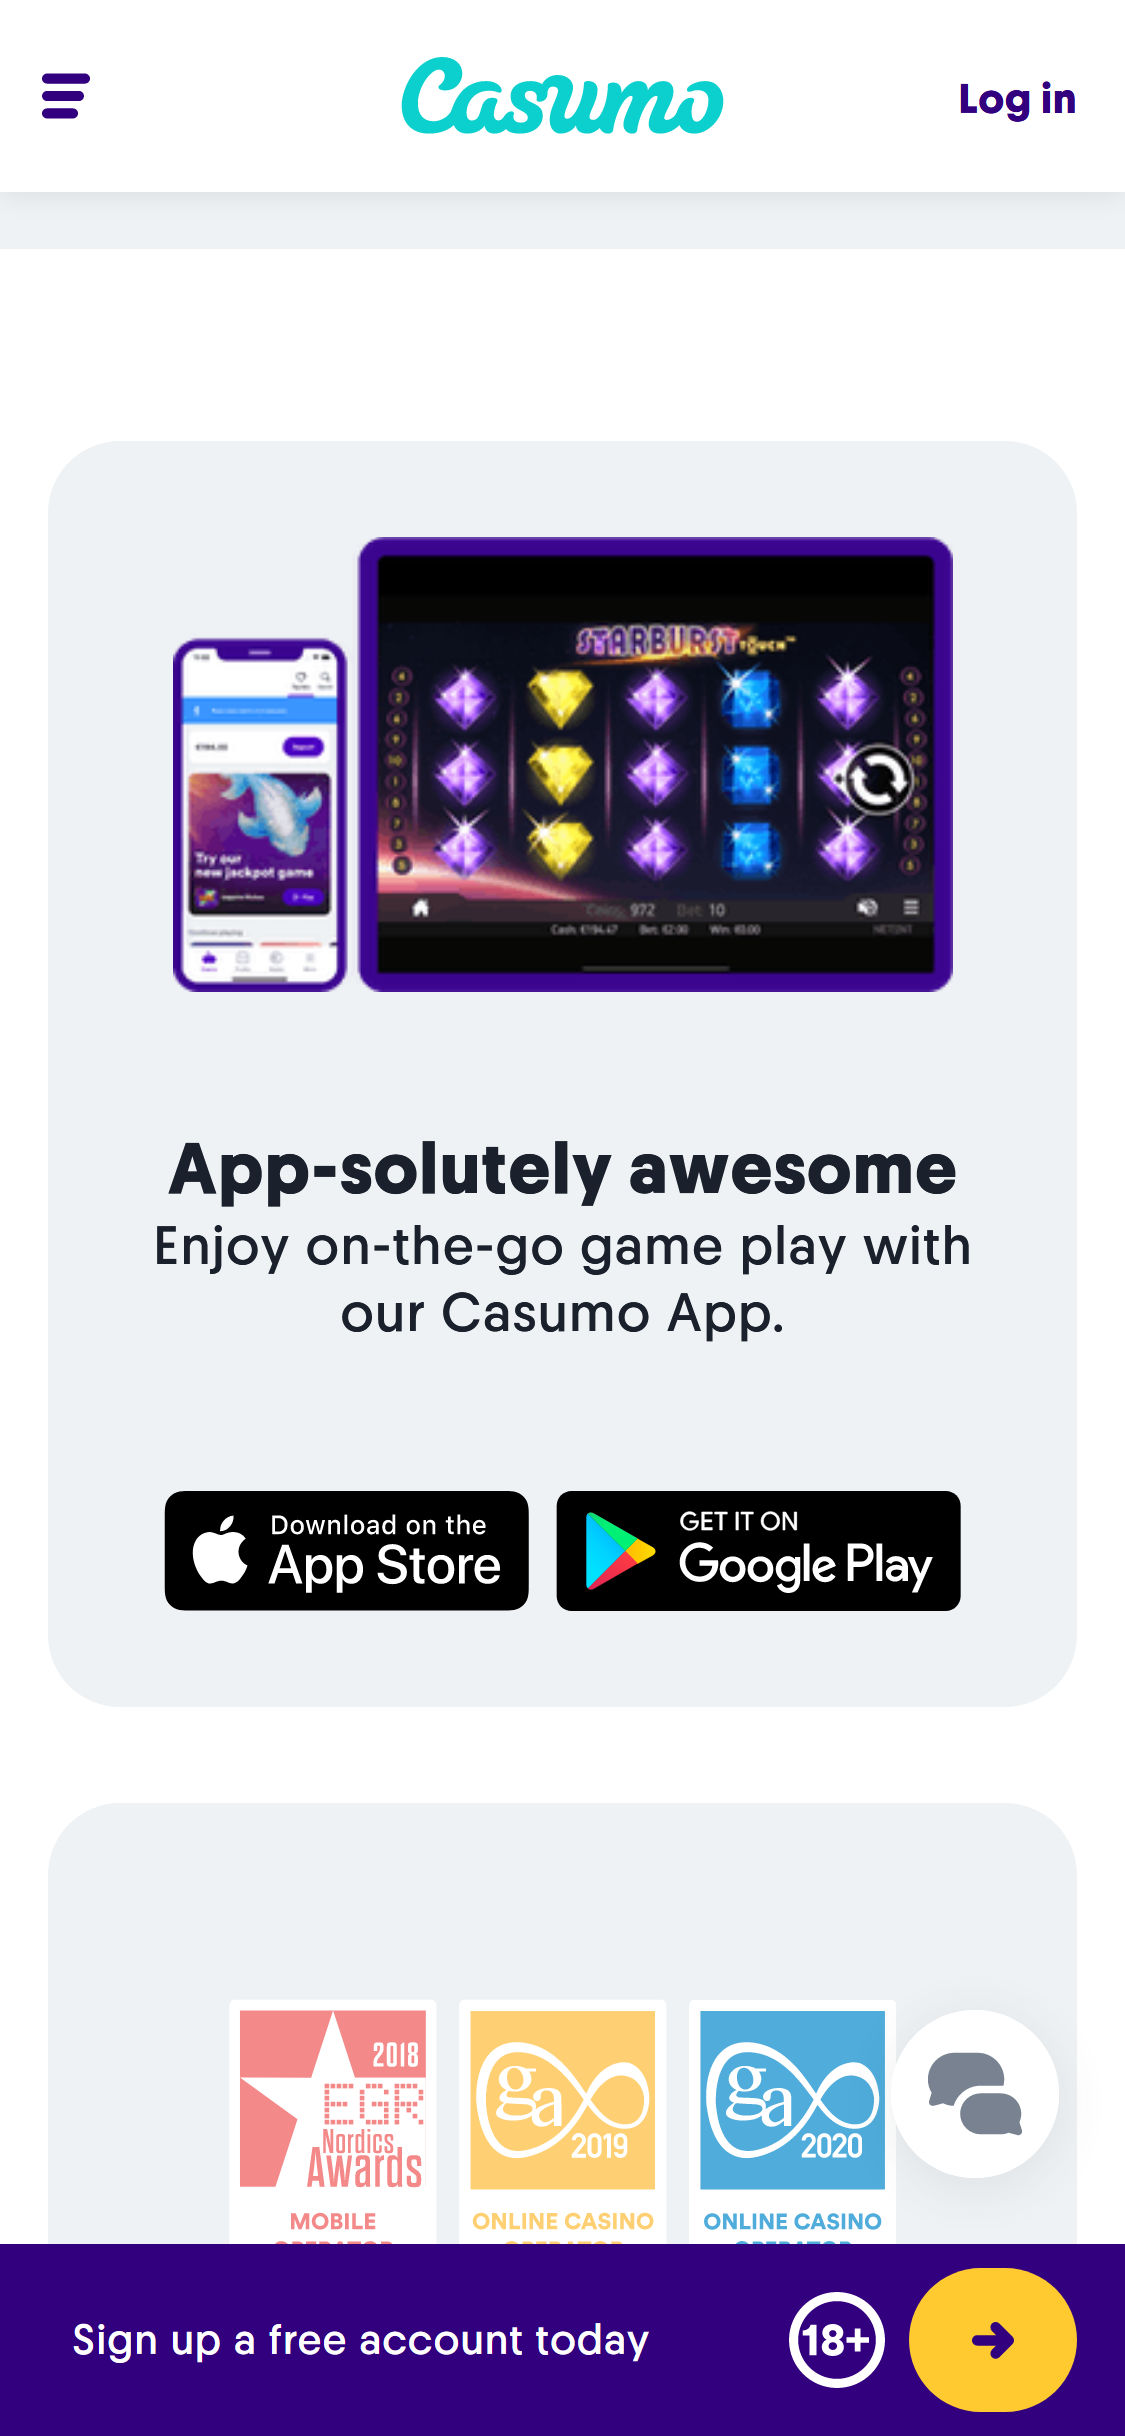 Casumo Casino Mobile App Review